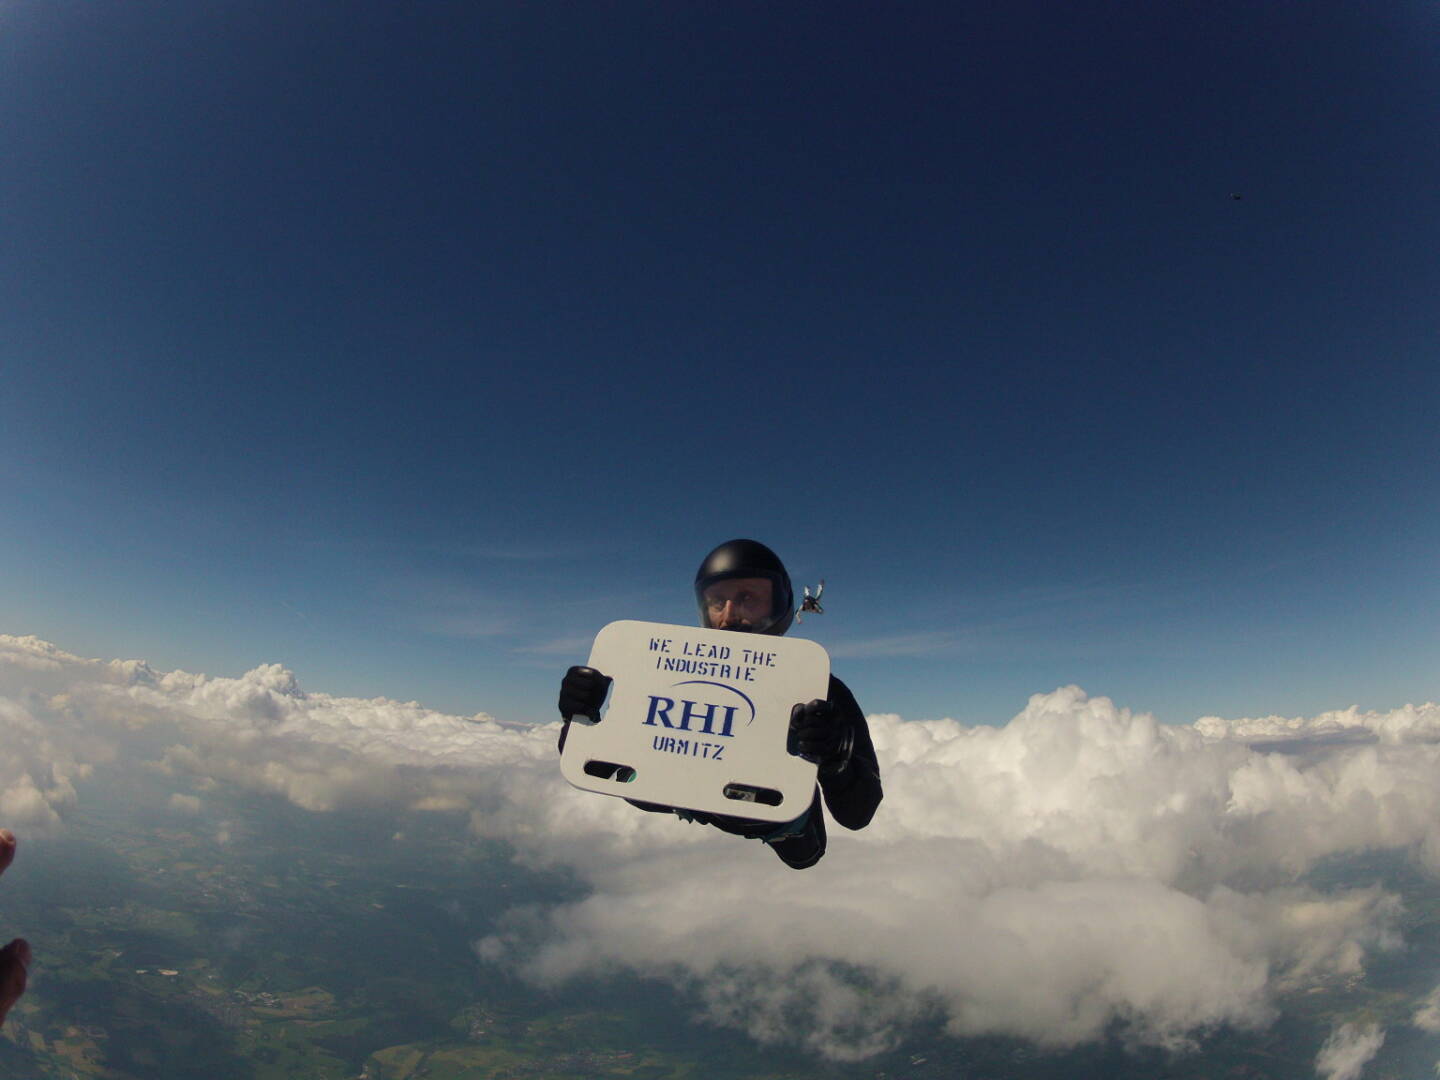 Ein deutscher RHI-Mitarbeiter bringt die Marke via Fallschirmsprung in luftige Höhen